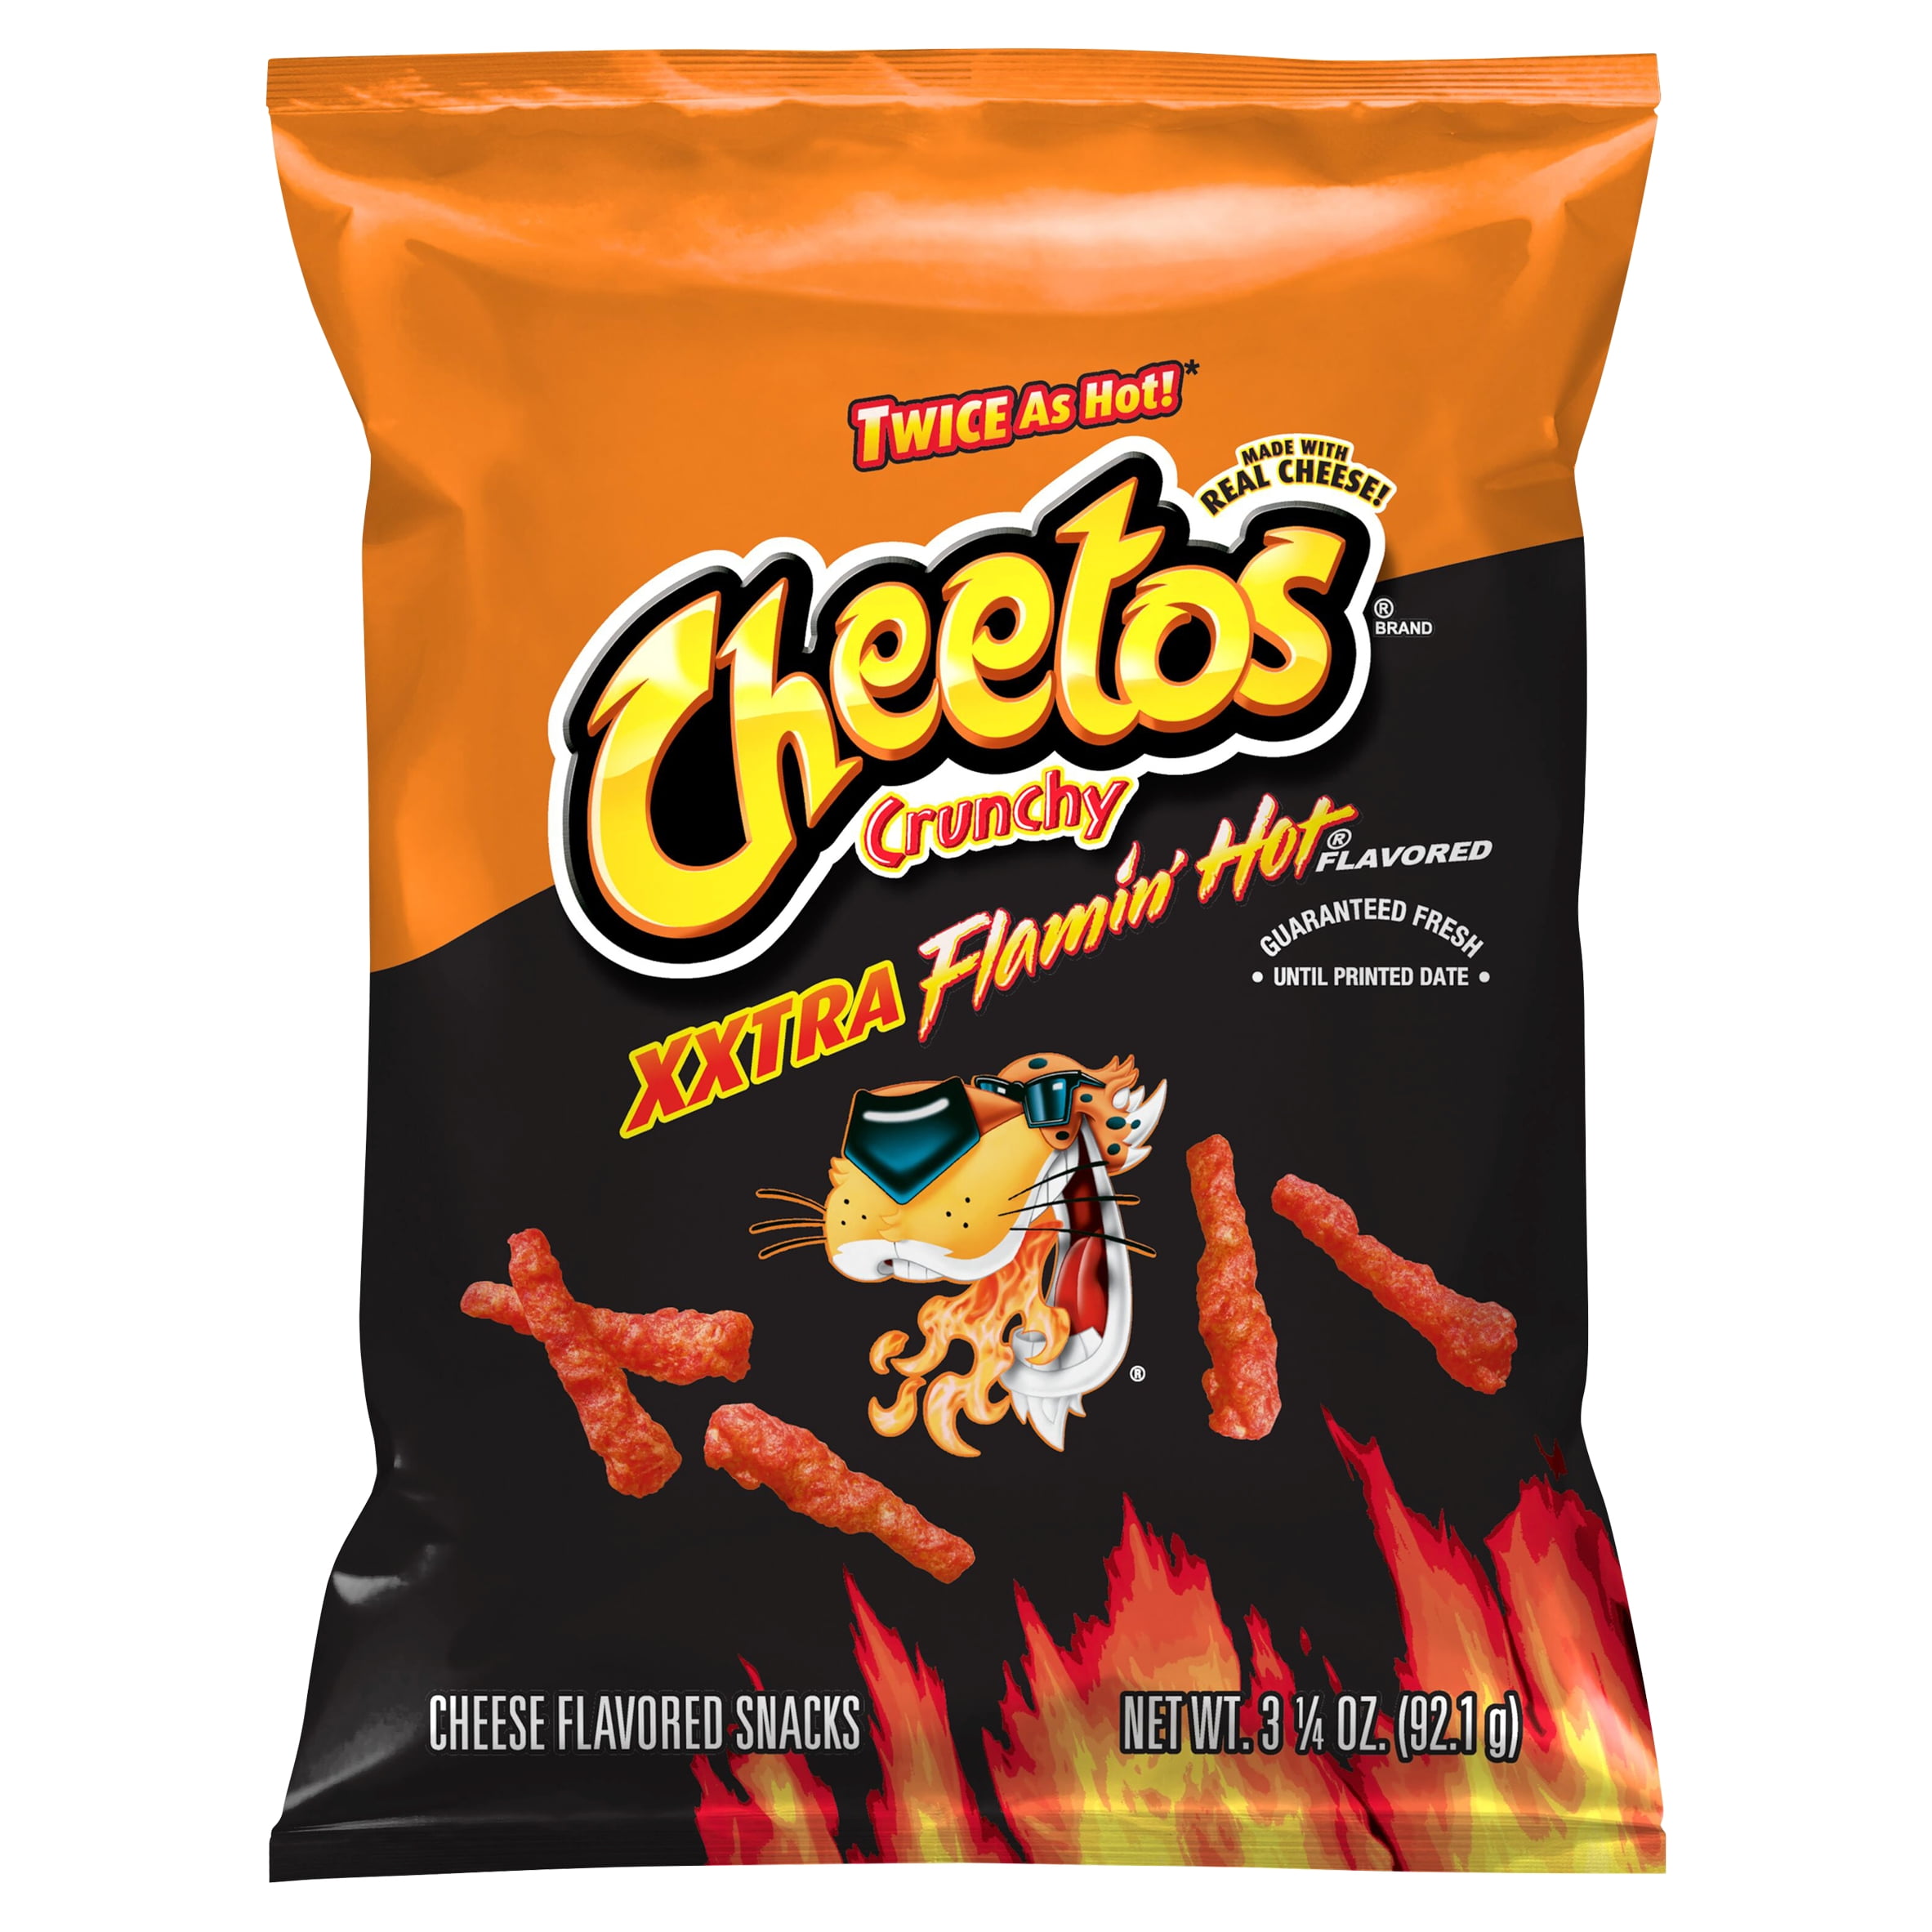 FRITO LAY - Cheese Crispy & Spicy Cheetos Flamin' Hot 75g